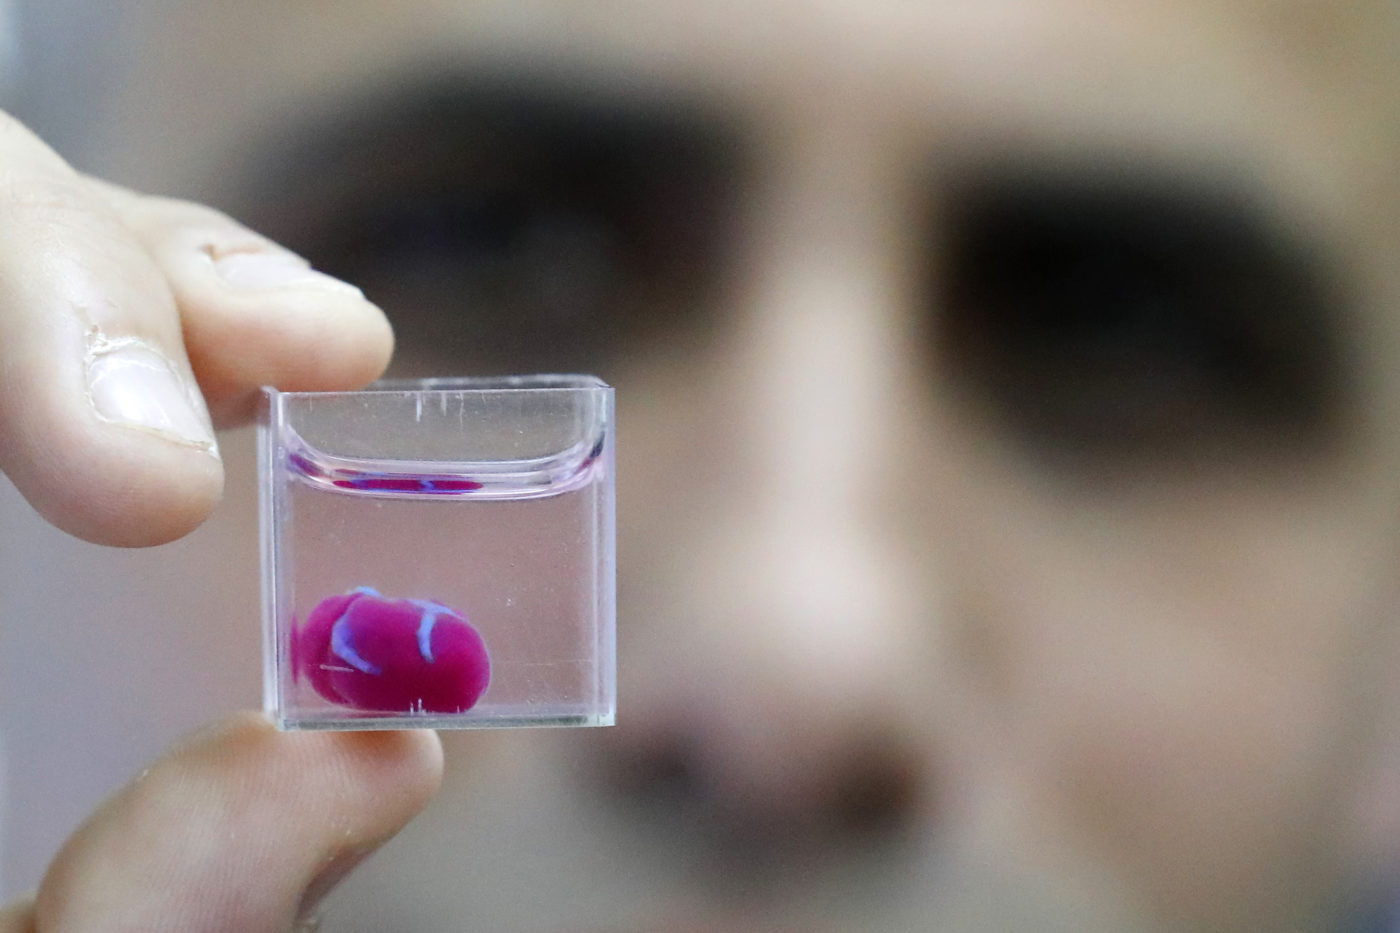 Teljes szívet hoztak létre izraeli tudósok 3D-nyomtatással